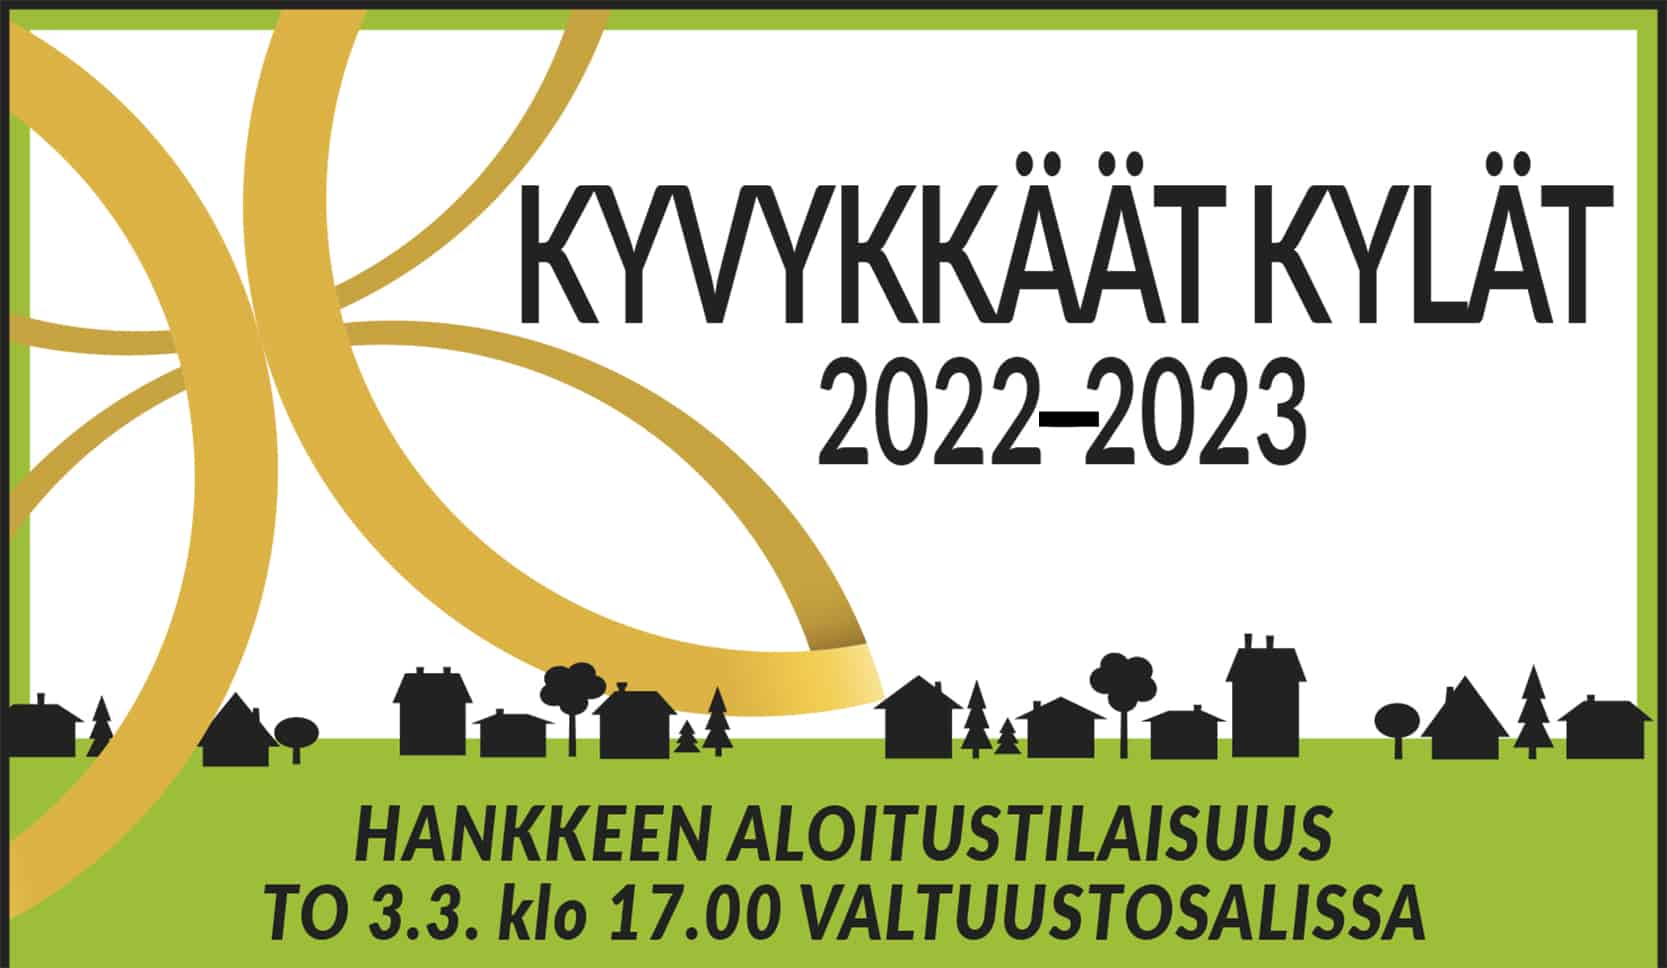 Mainoskuva, jossa vihreät reunat ja keskellä musta teksti: Kyvykkäät kylät 2022–2023.